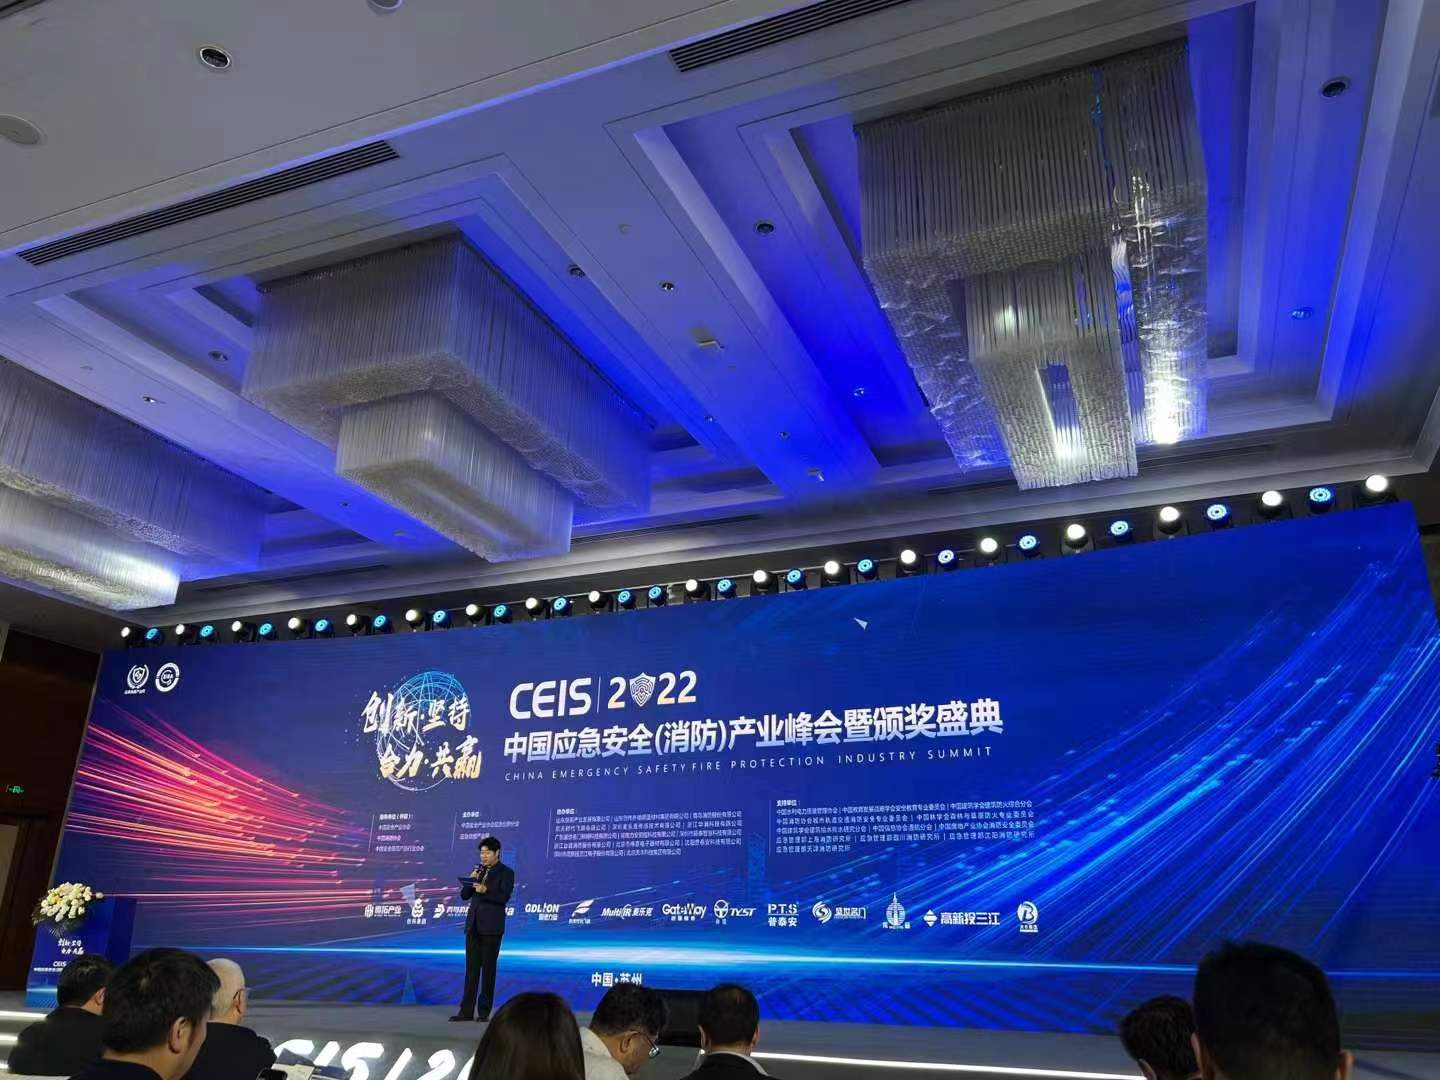 Kínai rendkívüli biztonsági (tűzvédelmi) ipari csúcstalálkozó és a tíz legjobb márka díjátadó ünnepsége